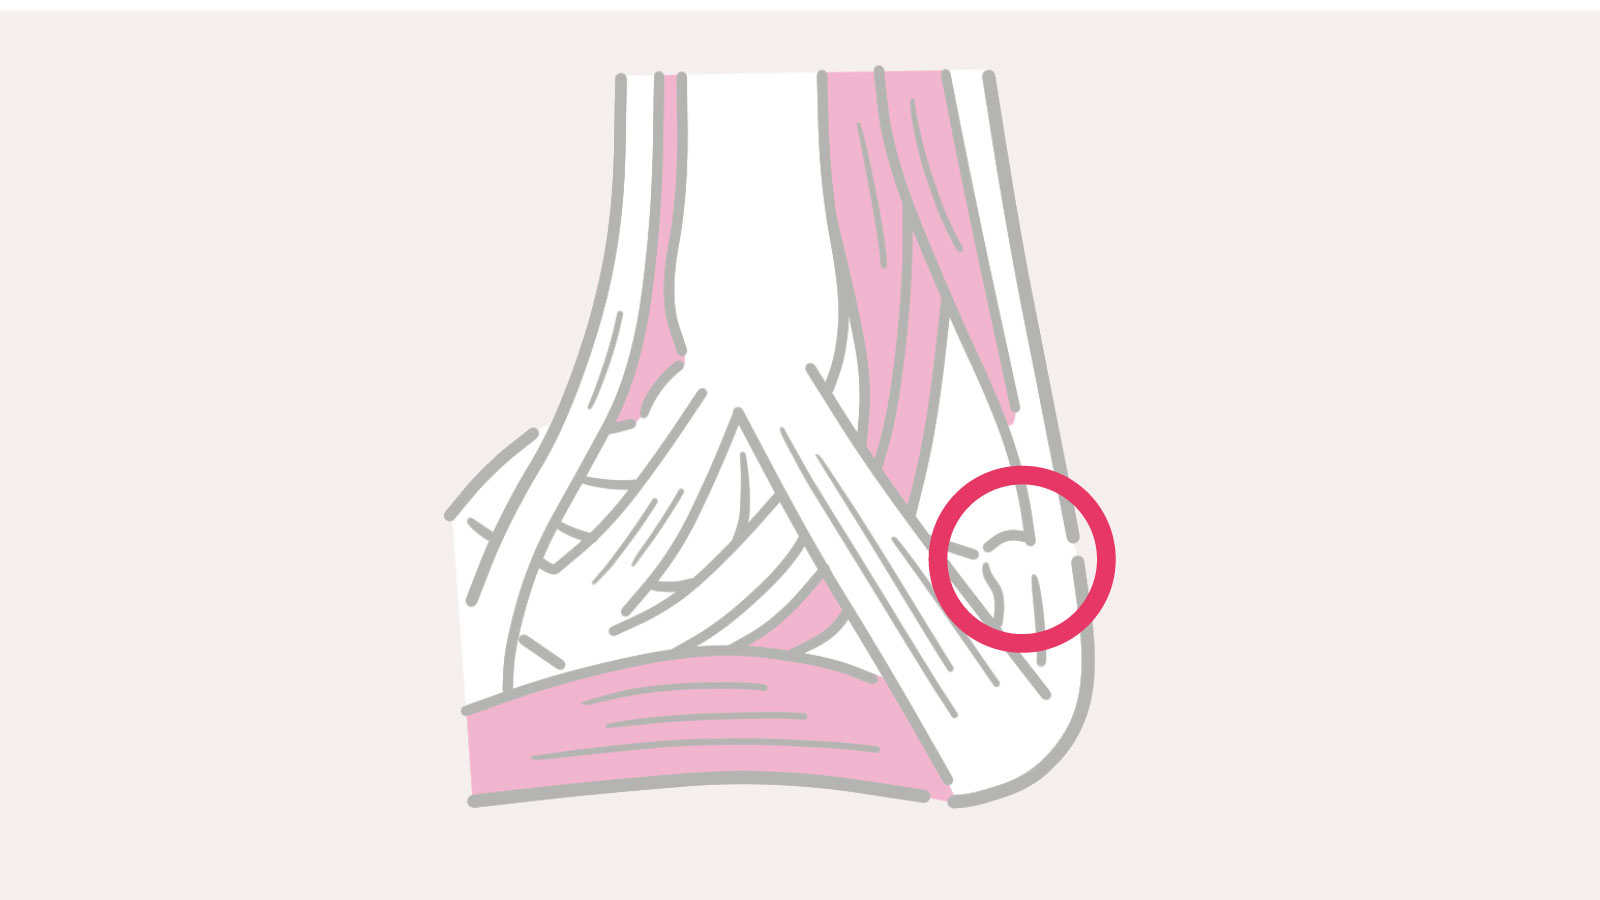 赤丸の踵骨付着部より約2cmの幅に起こる「アキレス腱付着部症」、その上に発症する「アキレス腱症」を説明するイラスト